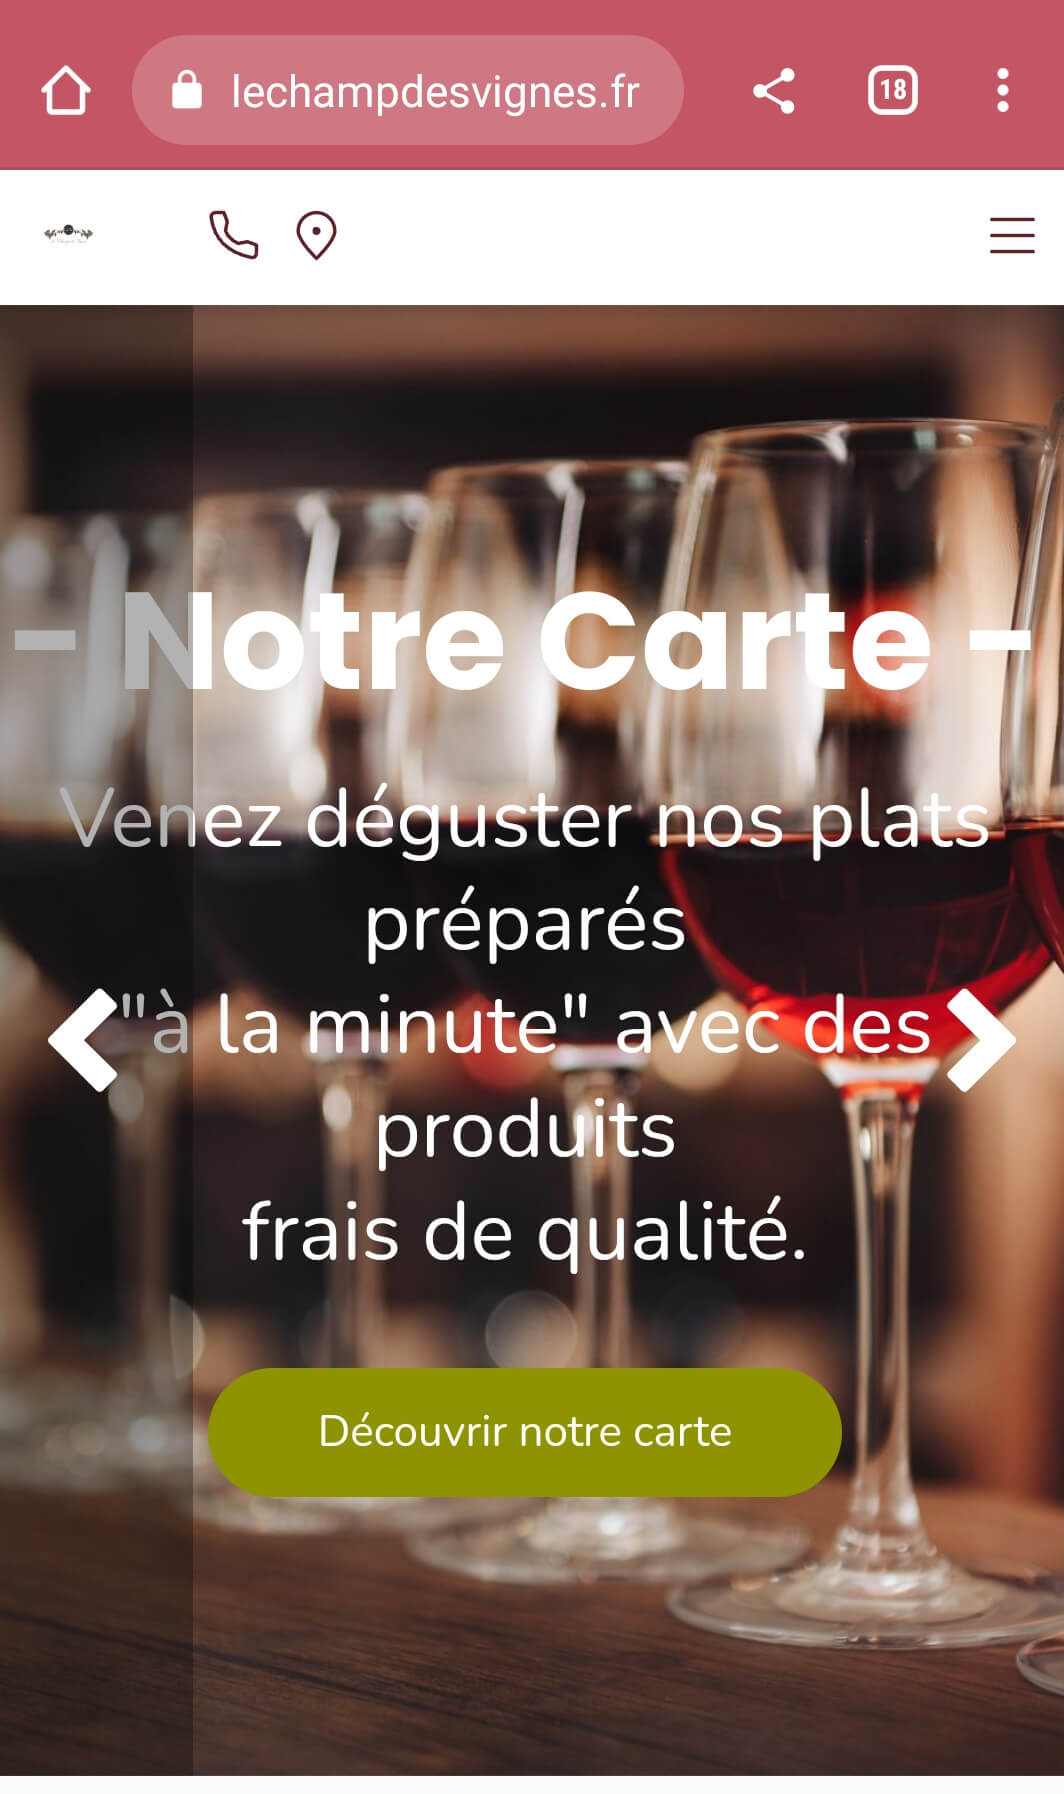 Example of responsive website: Le Champ des Vignes